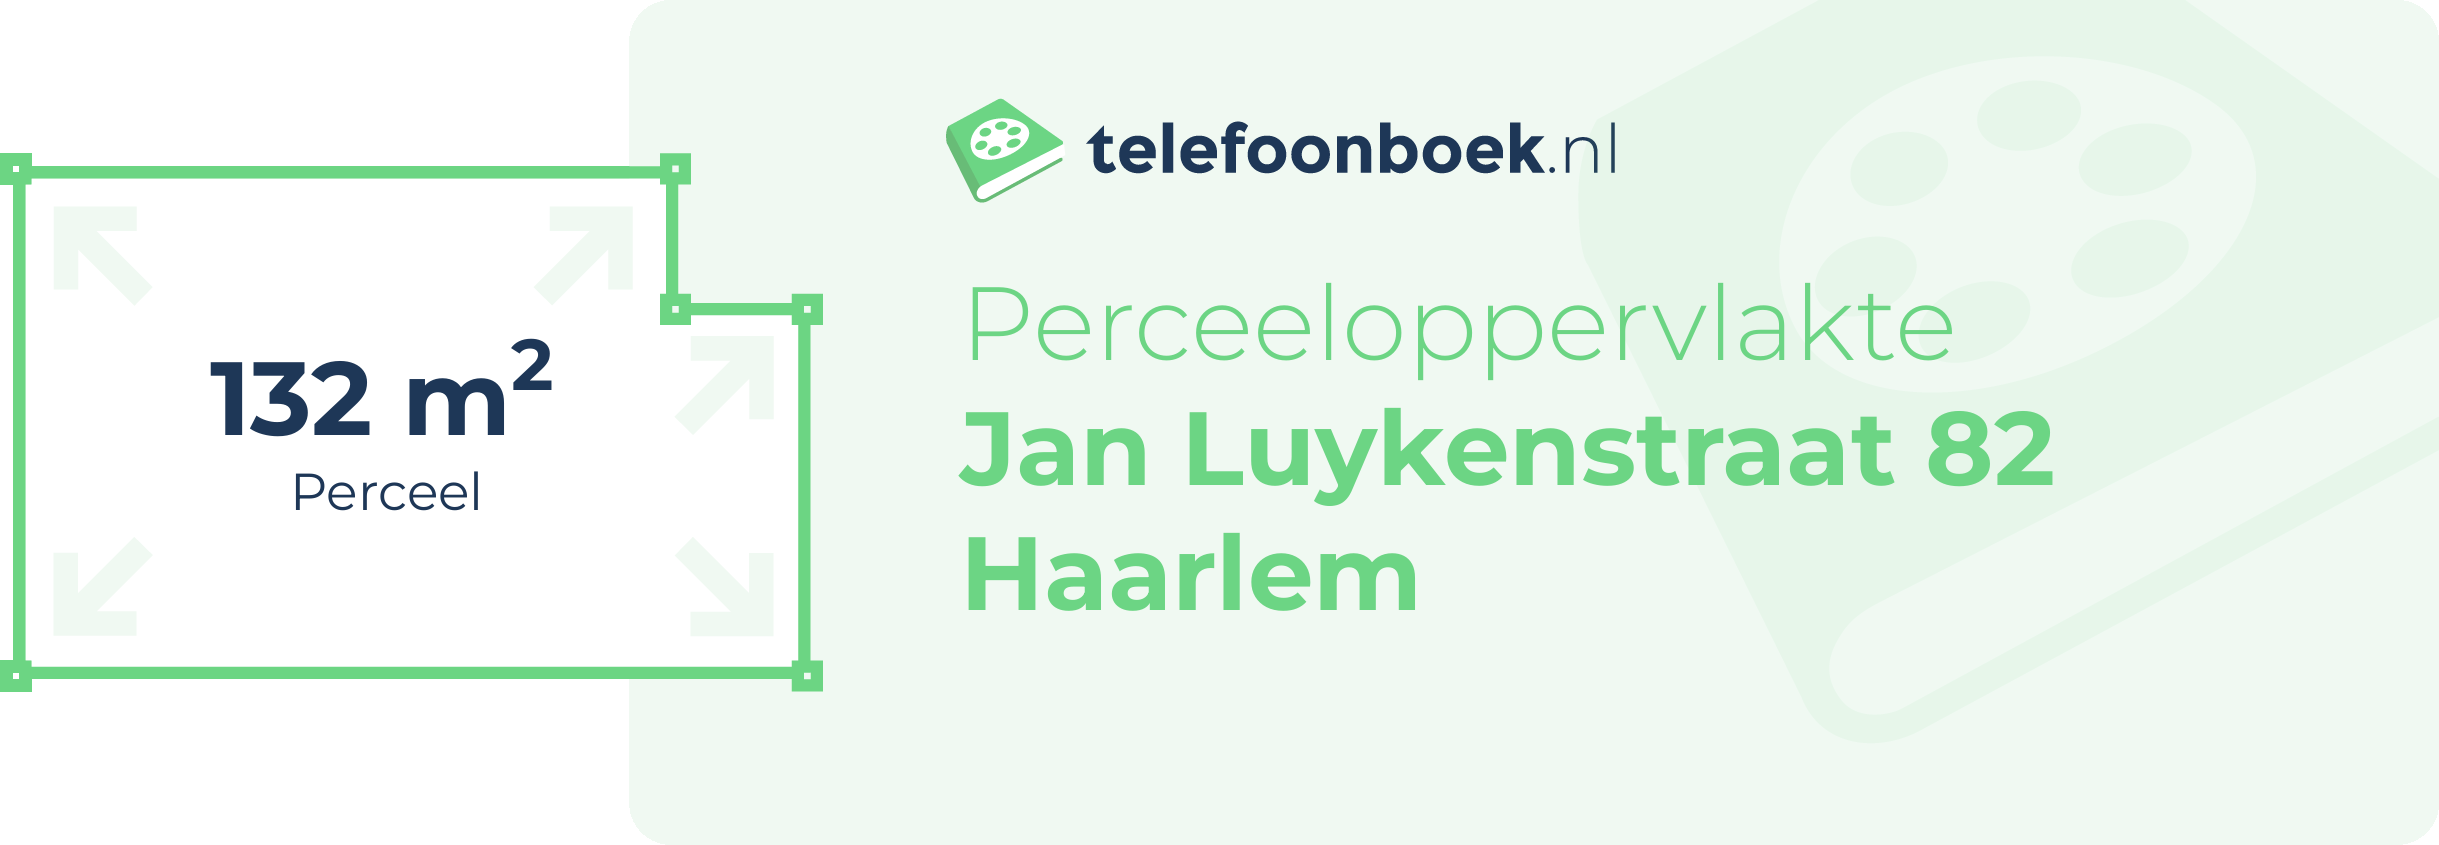 Perceeloppervlakte Jan Luykenstraat 82 Haarlem